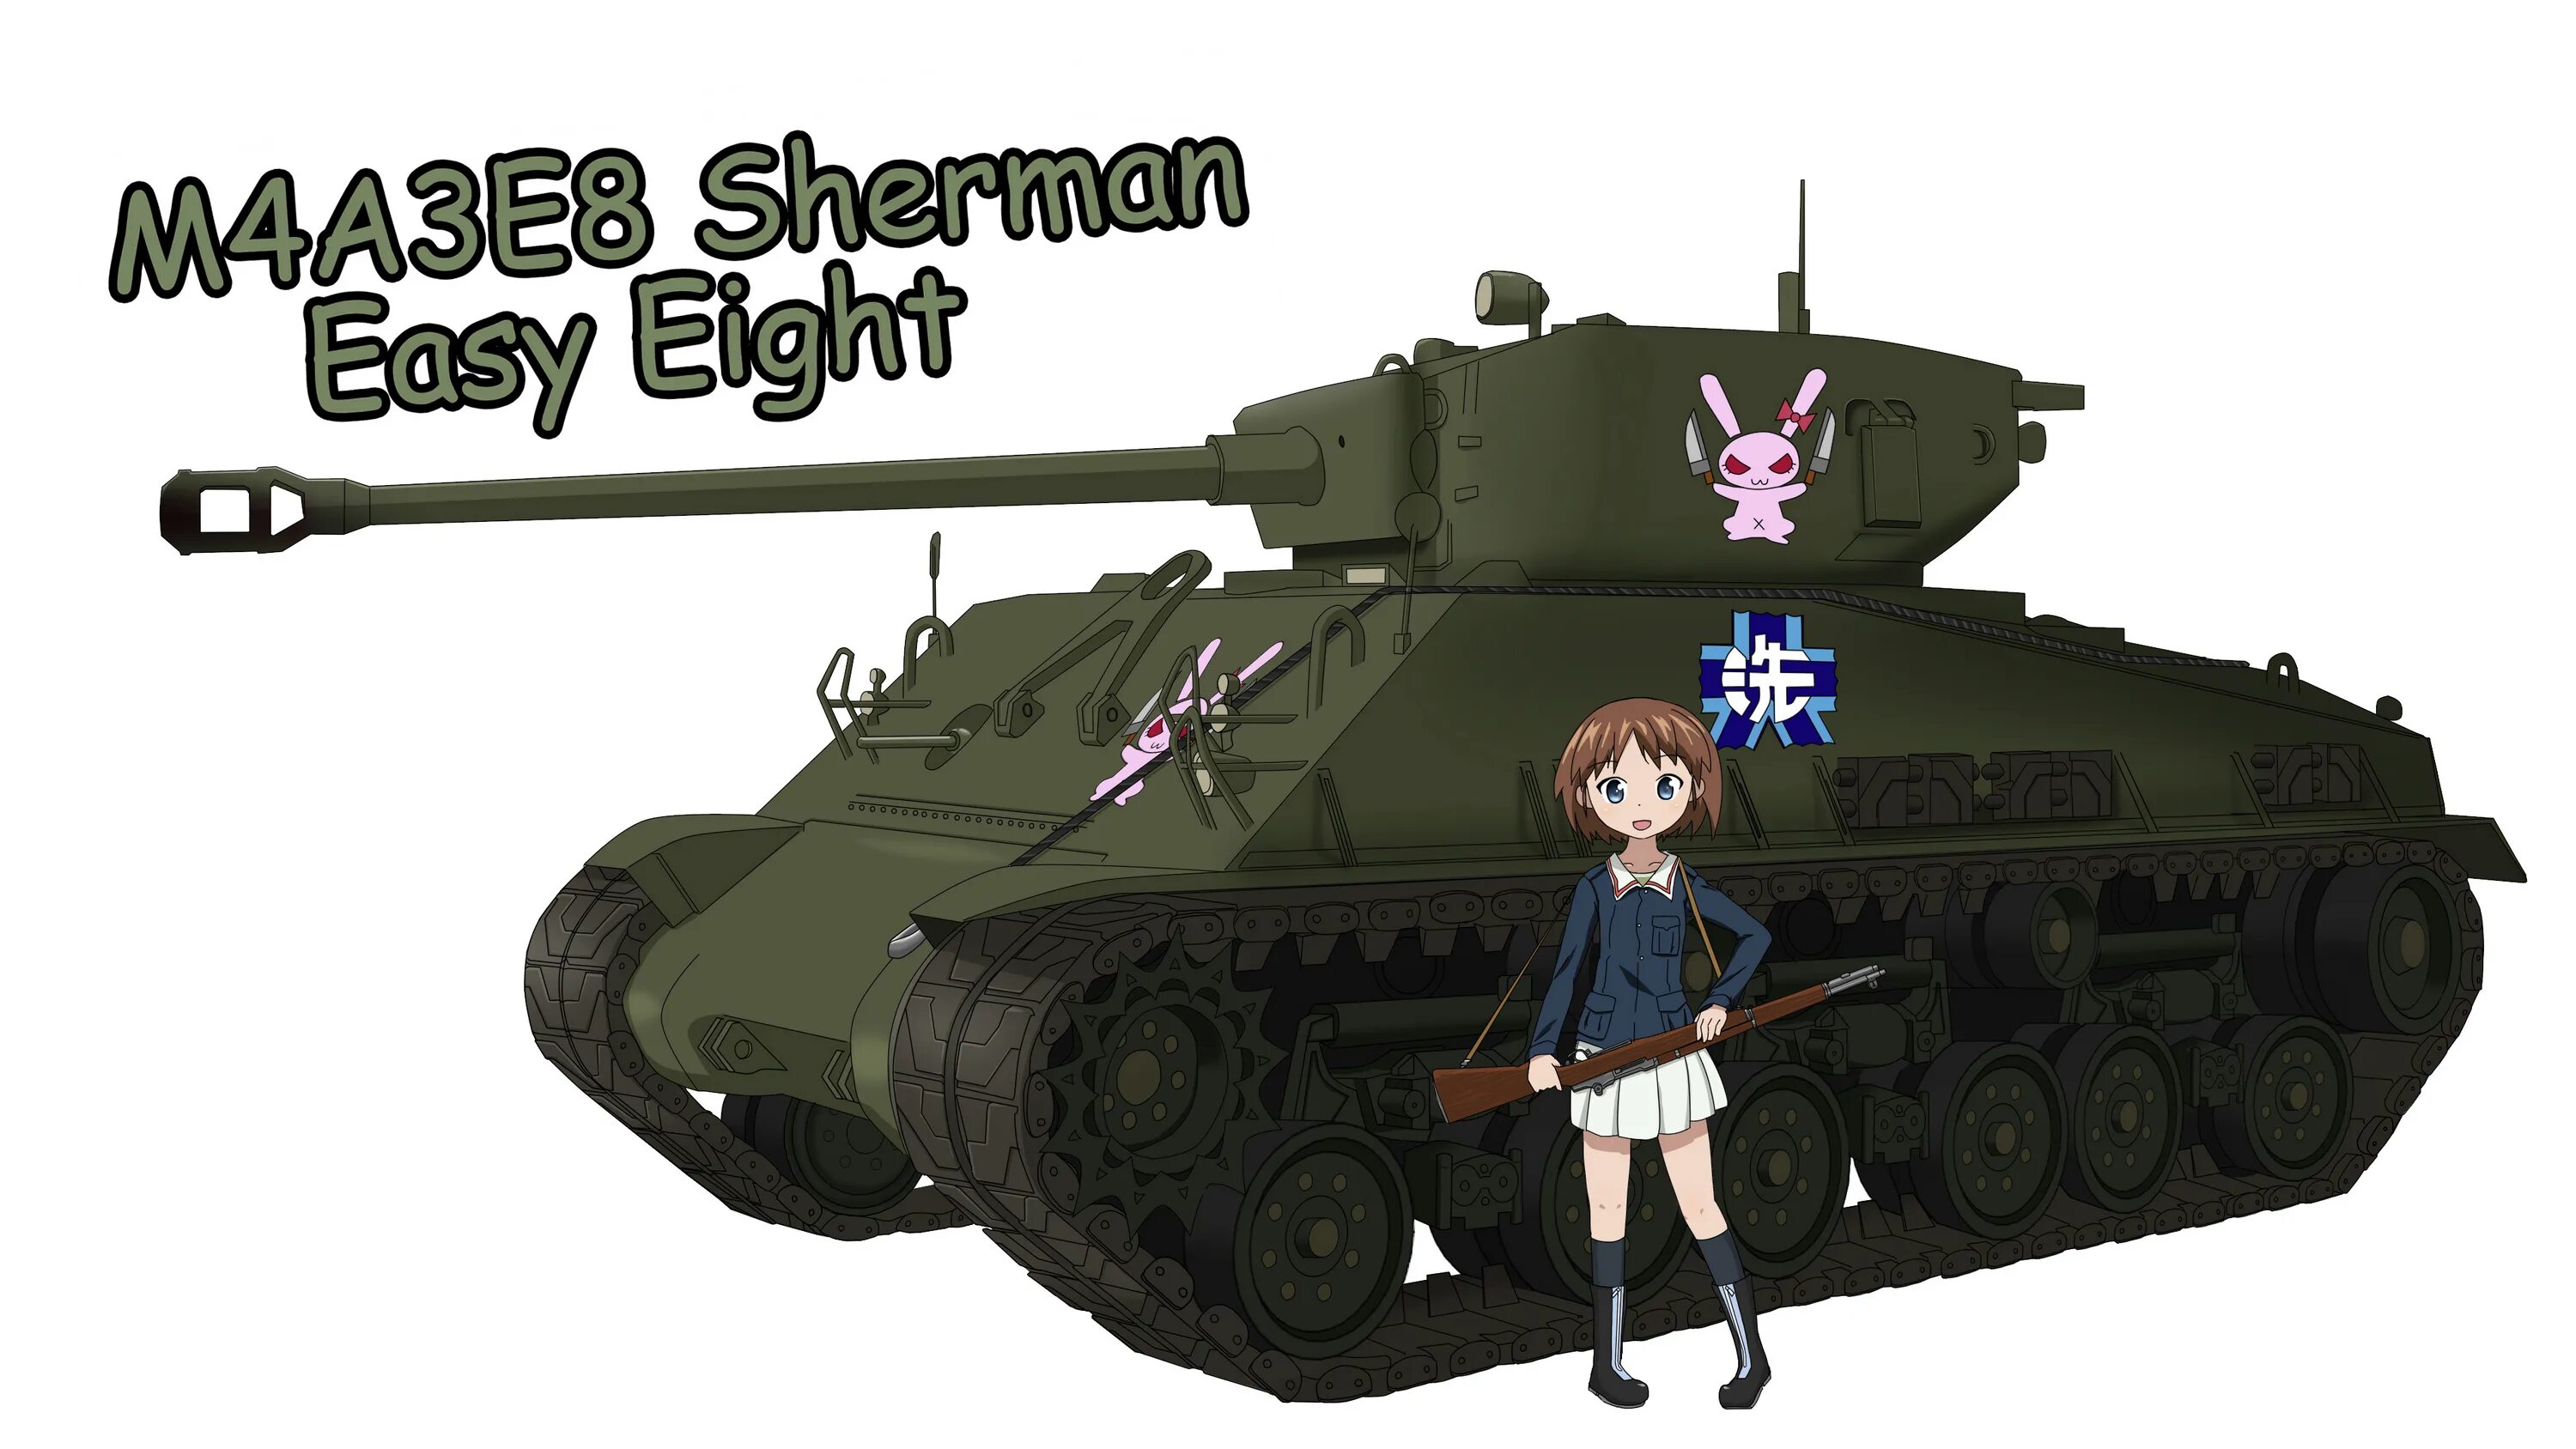 Шерман 76 girls und Panzer. Шерман Файрфлай girls und Panzer. Girls und Panzer Шерман. Gup memes